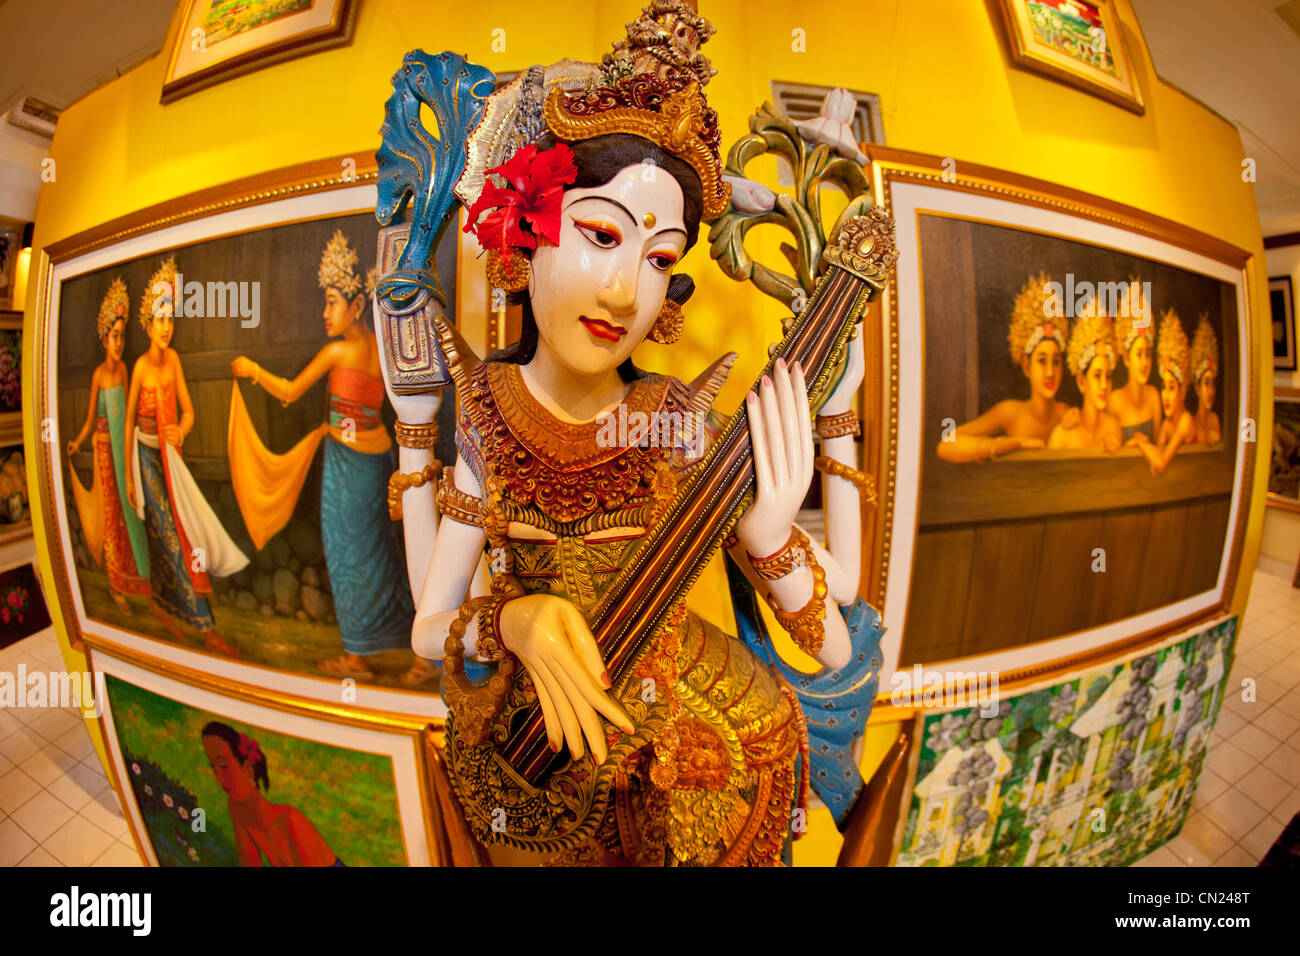 Statua dipinta in una galleria d'arte Bali Indonesia Foto Stock